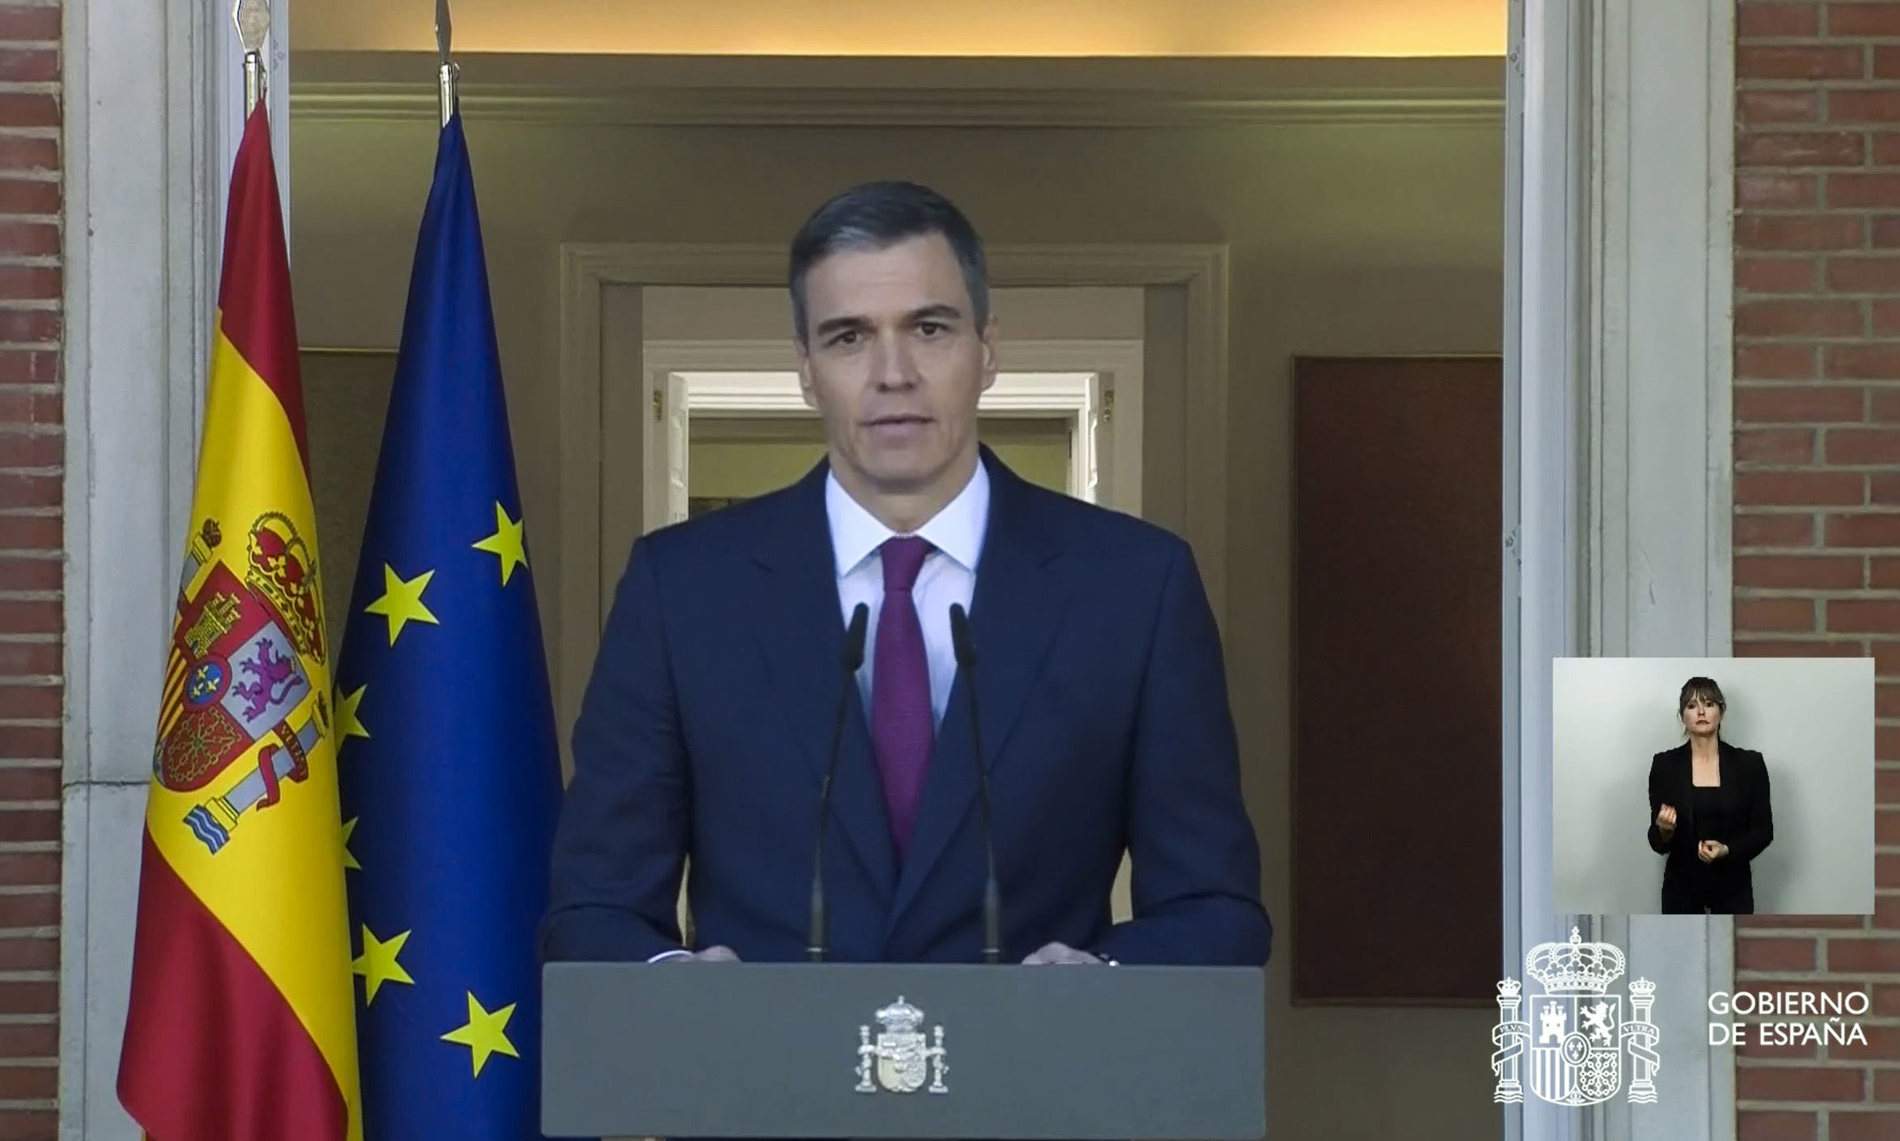 Aproves la decisió de Pedro Sánchez de continuar com a president del govern espanyol?